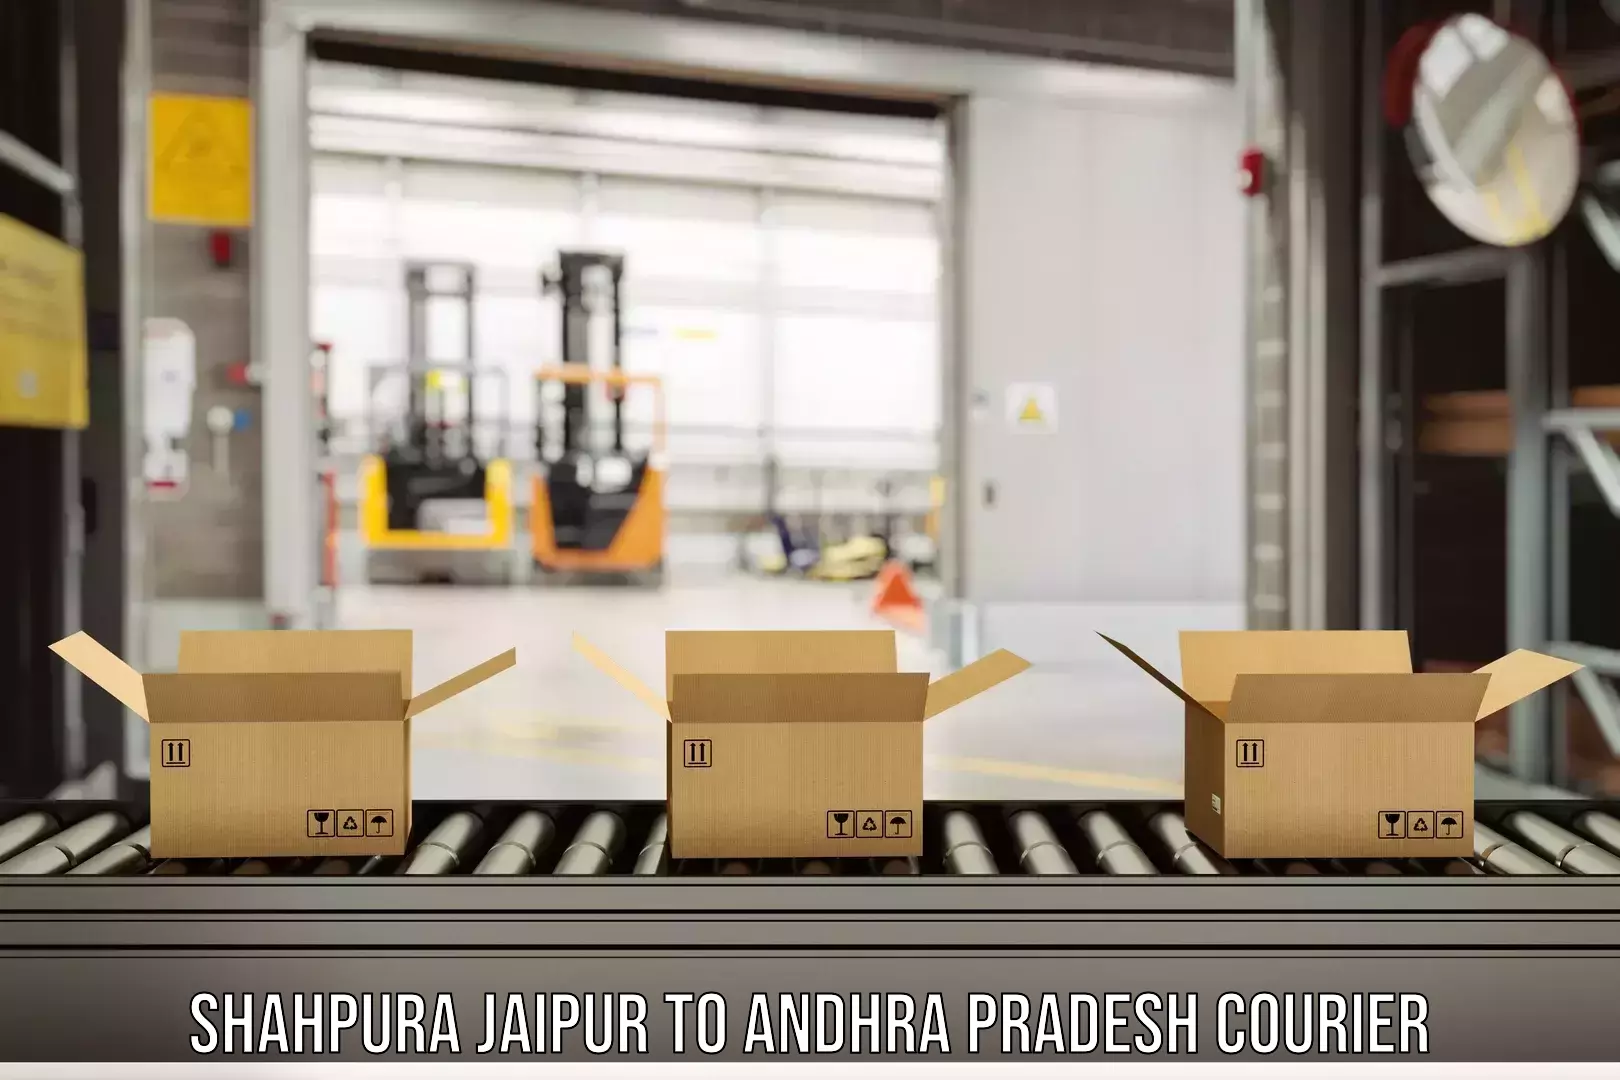 Global logistics network Shahpura Jaipur to Andhra Pradesh